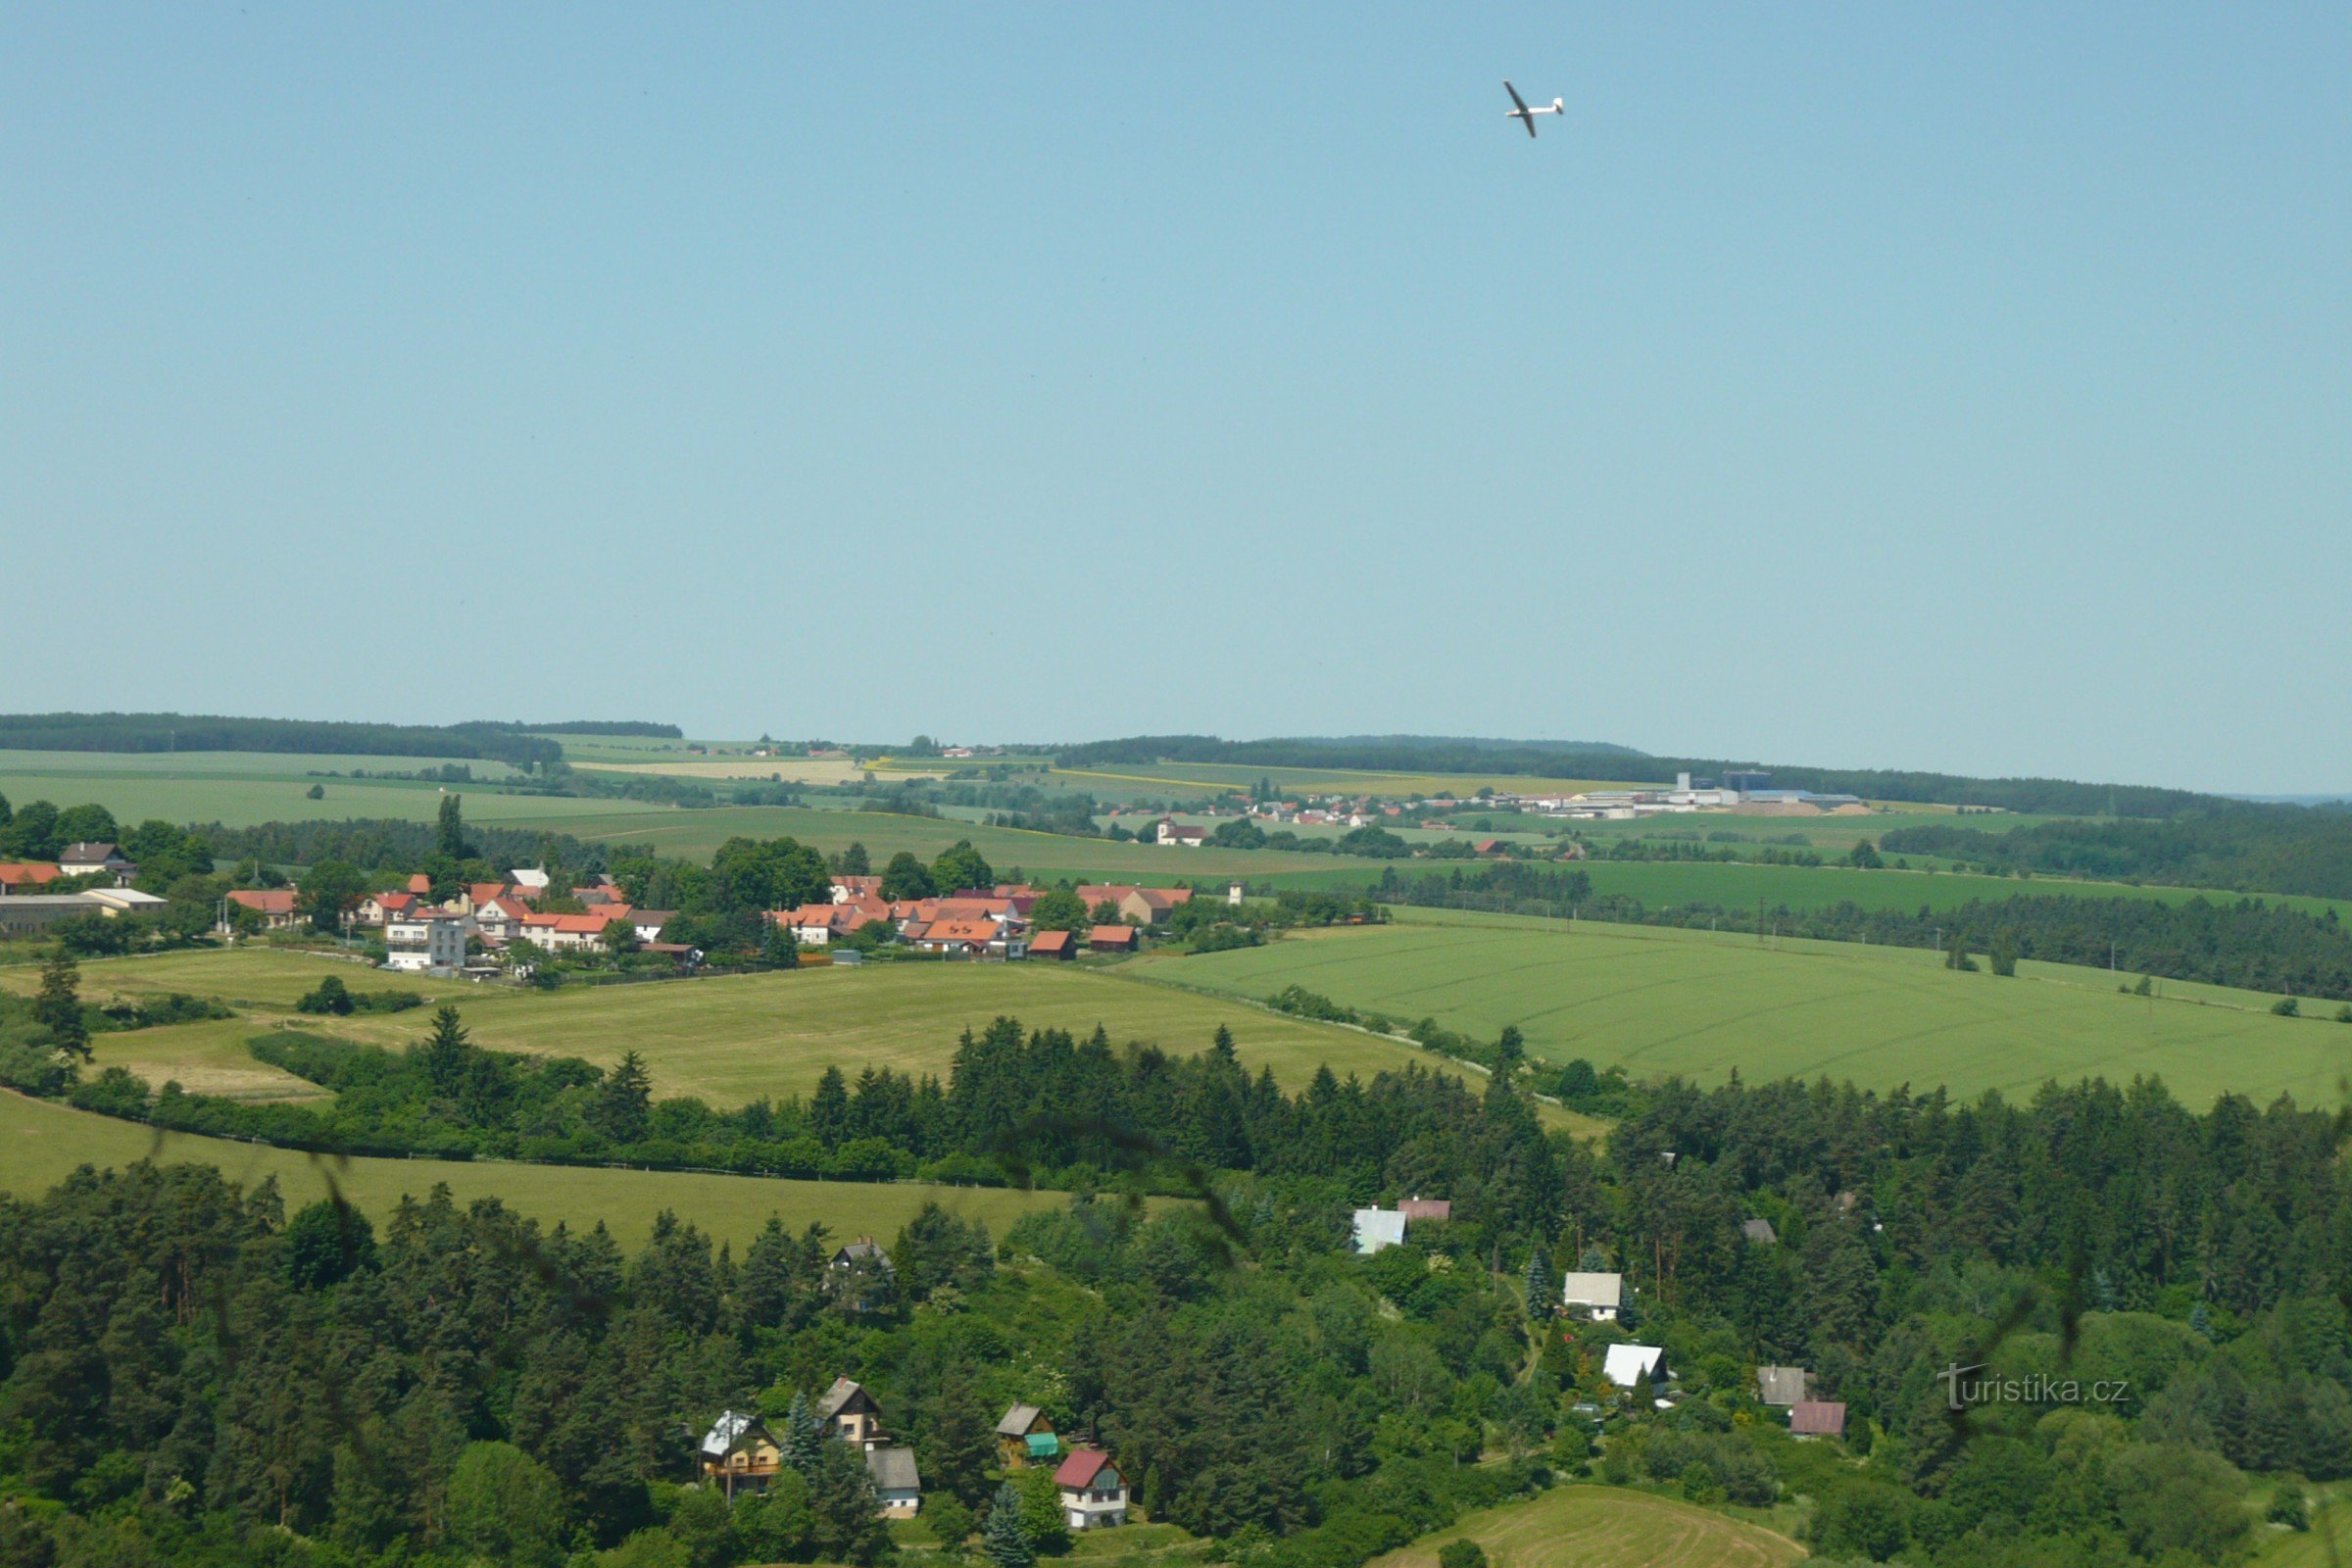 Άποψη της νότιας περιοχής Manětín